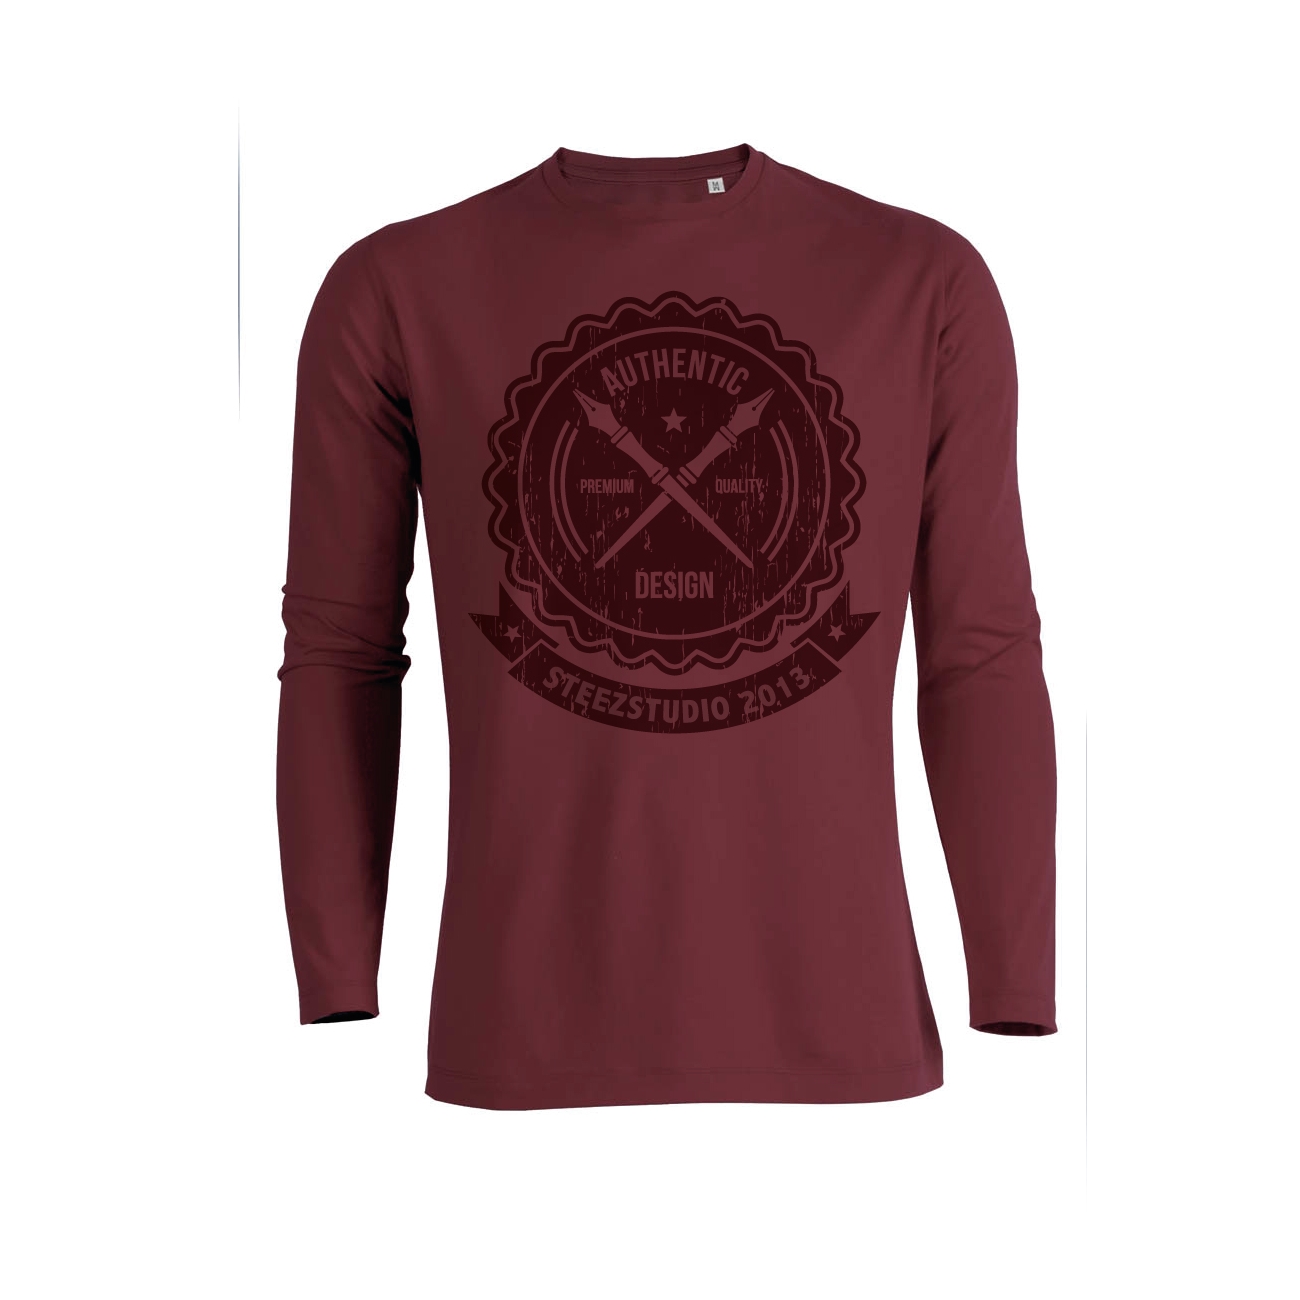 T-SHIRT VAGUES & SUNSET HOMME — OH LES JOLIS  Marque française de T-shirts,  sweat shirts et accessoires 100% coton biologique.